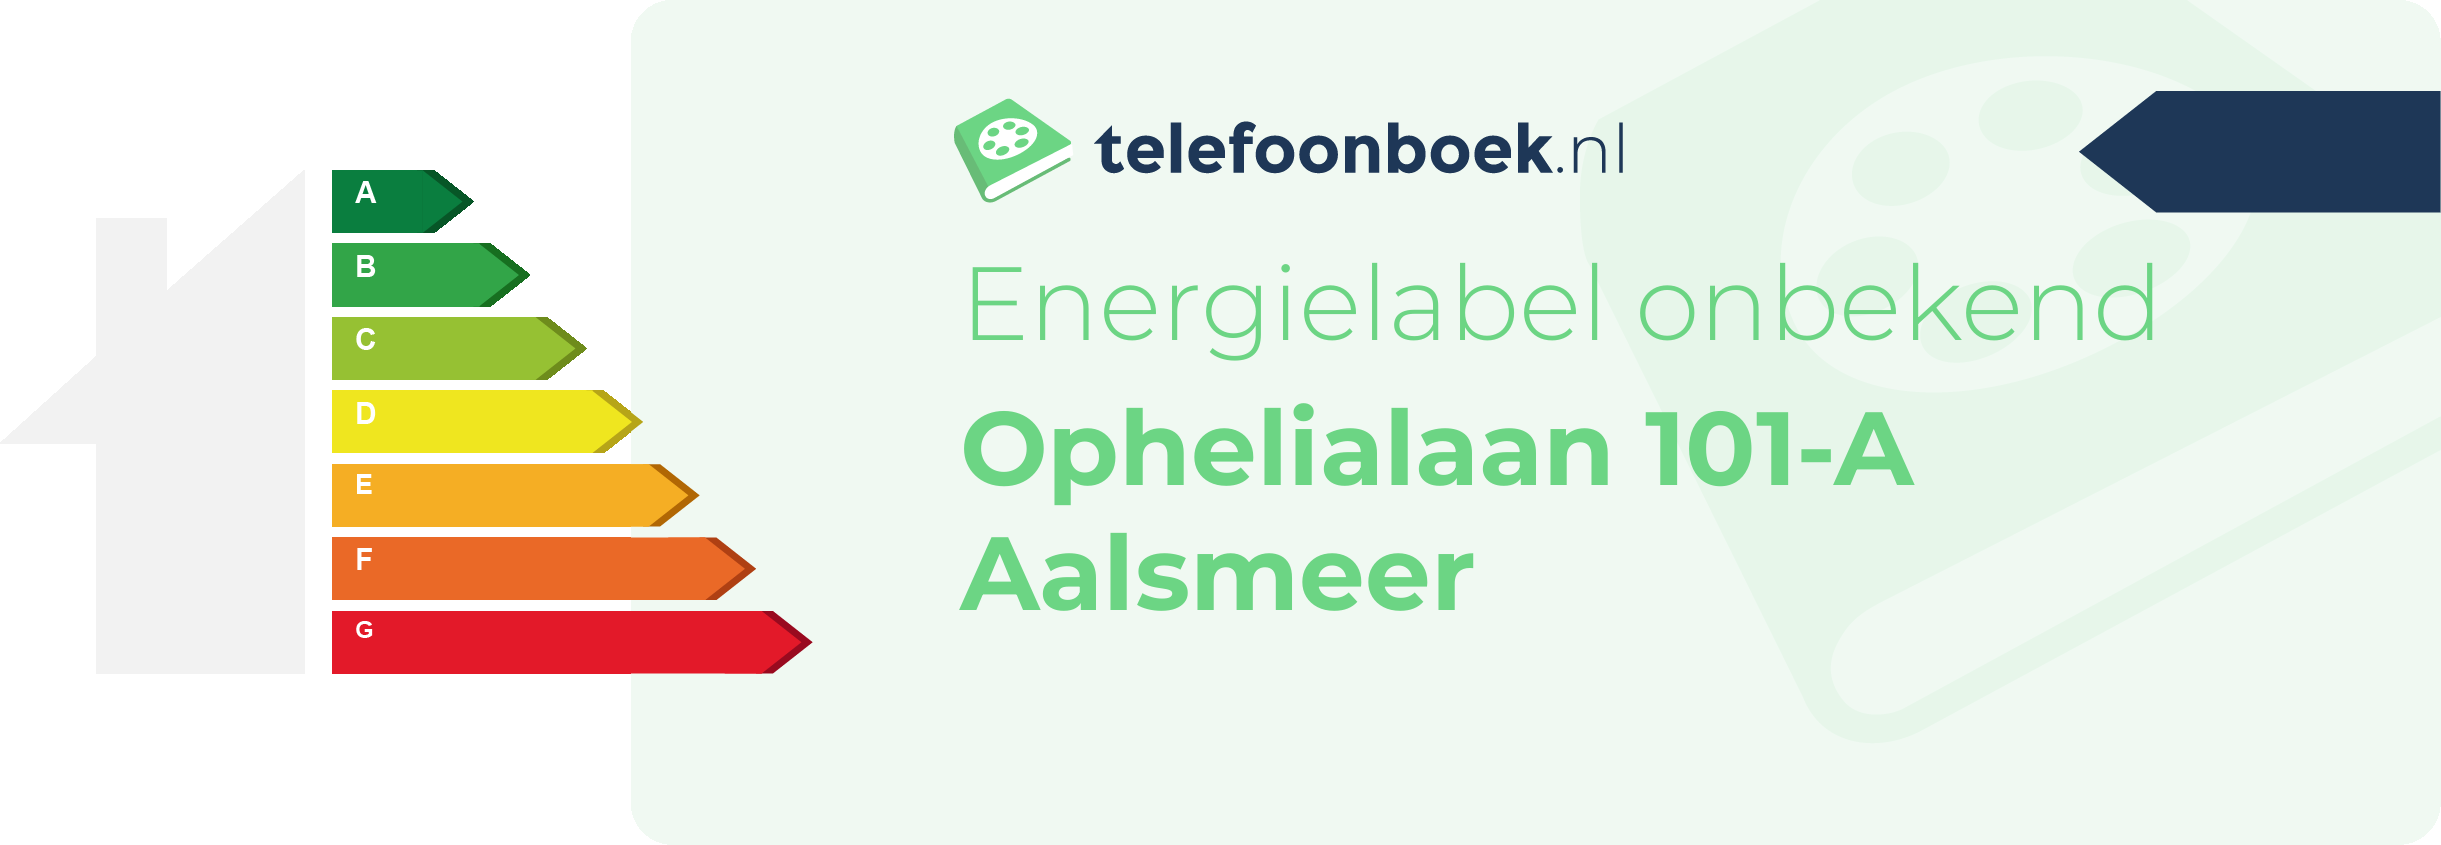 Energielabel Ophelialaan 101-A Aalsmeer